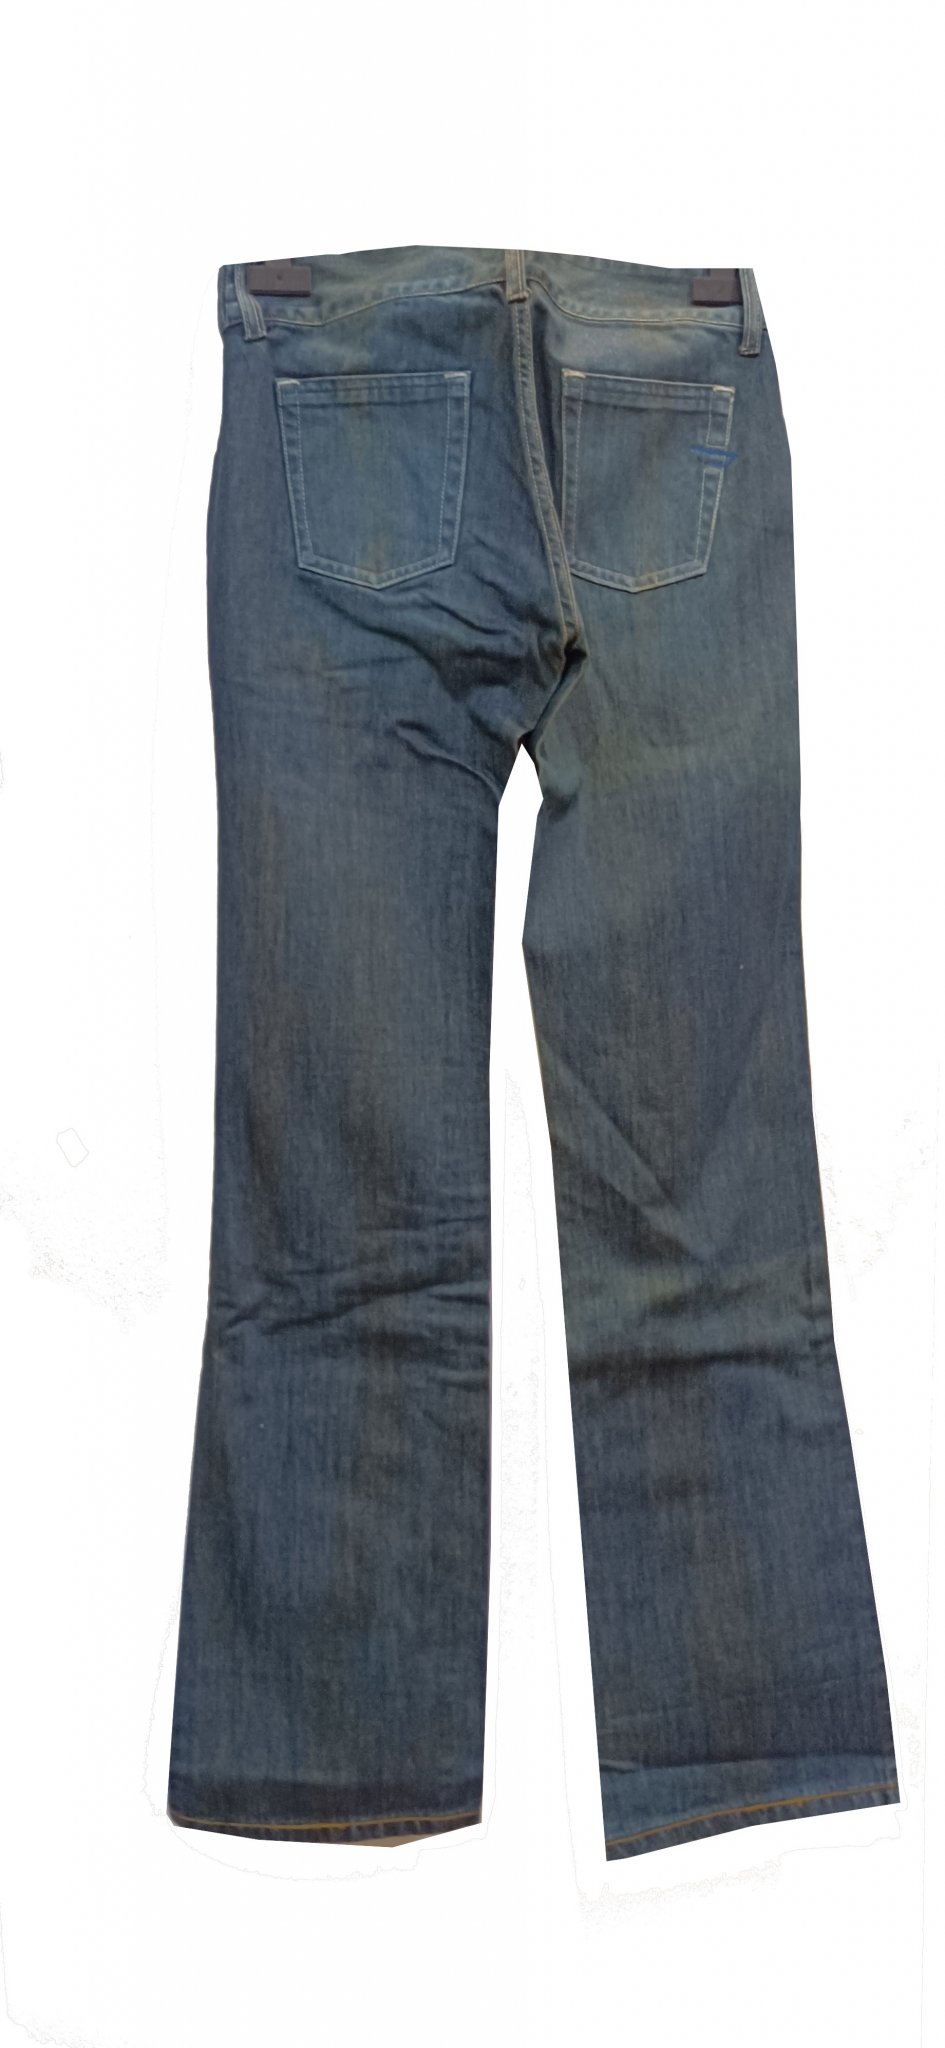  Παντελόνι τζιν βαμβακερο σε μπλε 